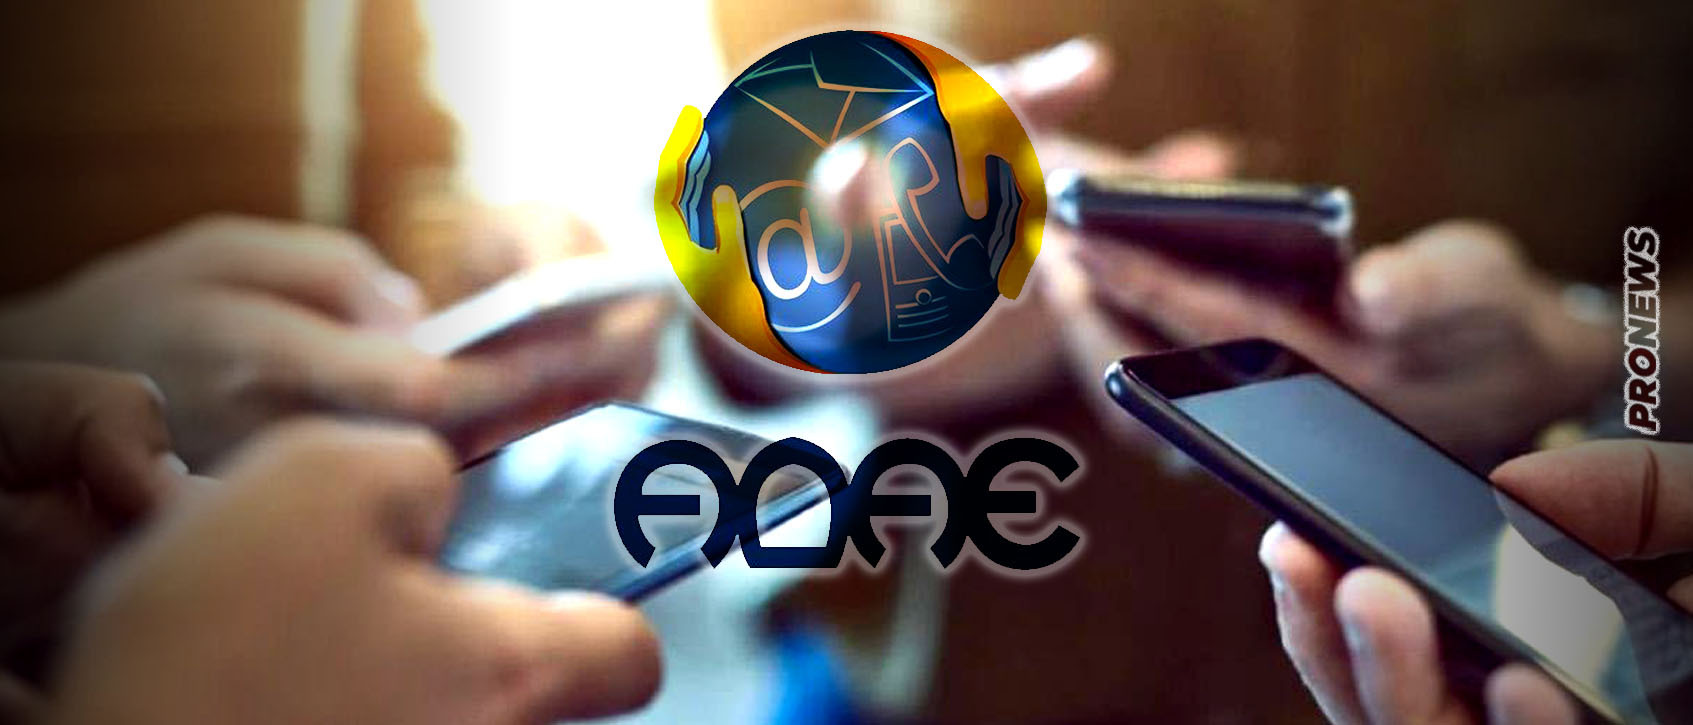 Υποκλοπές: Ξεκινάει η έφοδος της ΑΔΑΕ στους παρόχους κινητής τηλεφωνίας – «Κρύος ιδρώτας» στο Μαξίμου